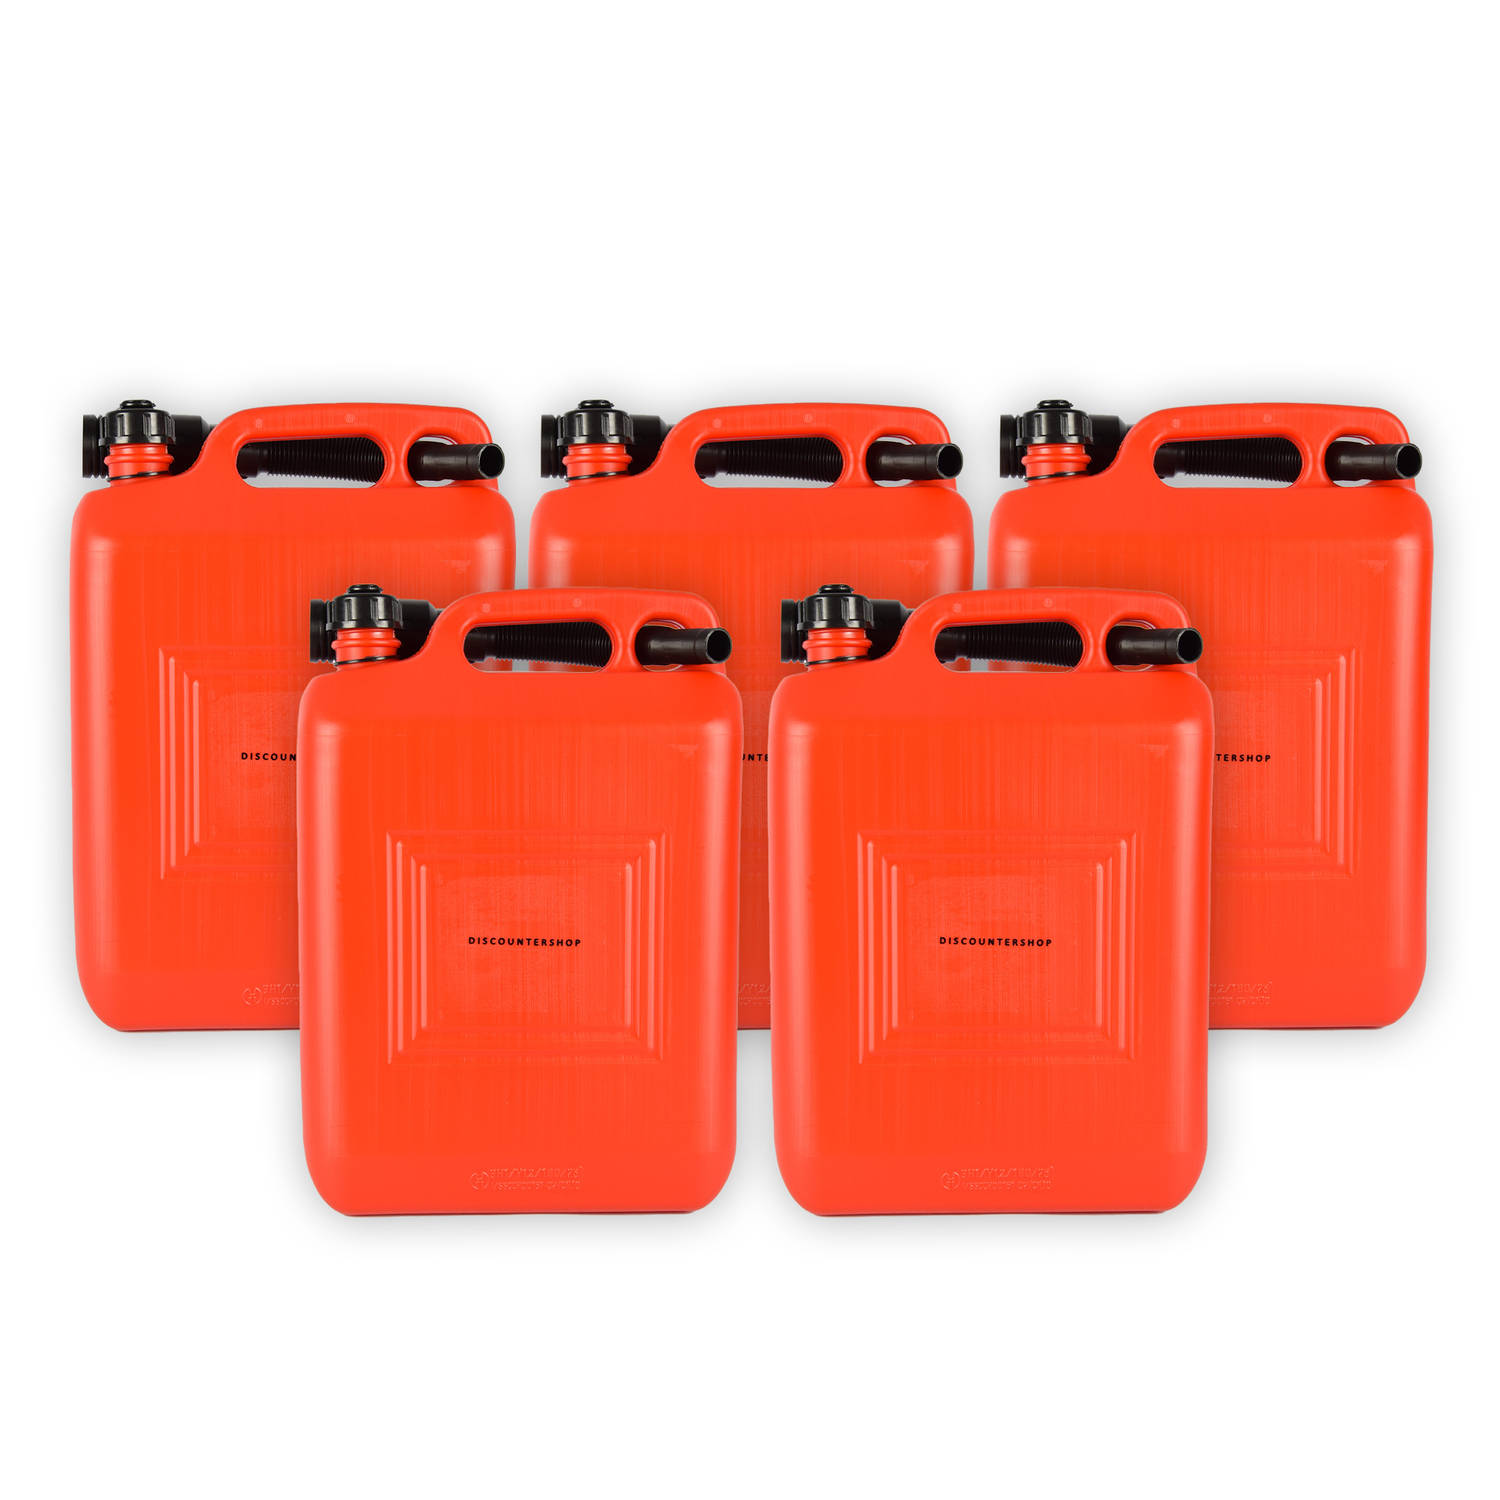 Set van 5 Robuuste Jerrycans - 10 Liter elk in Rood Polyethyleen - Met Schenktuit en Handgreep - Ideaal voor Onderweg - Geschikt voor Benzine, Diesel en Meer